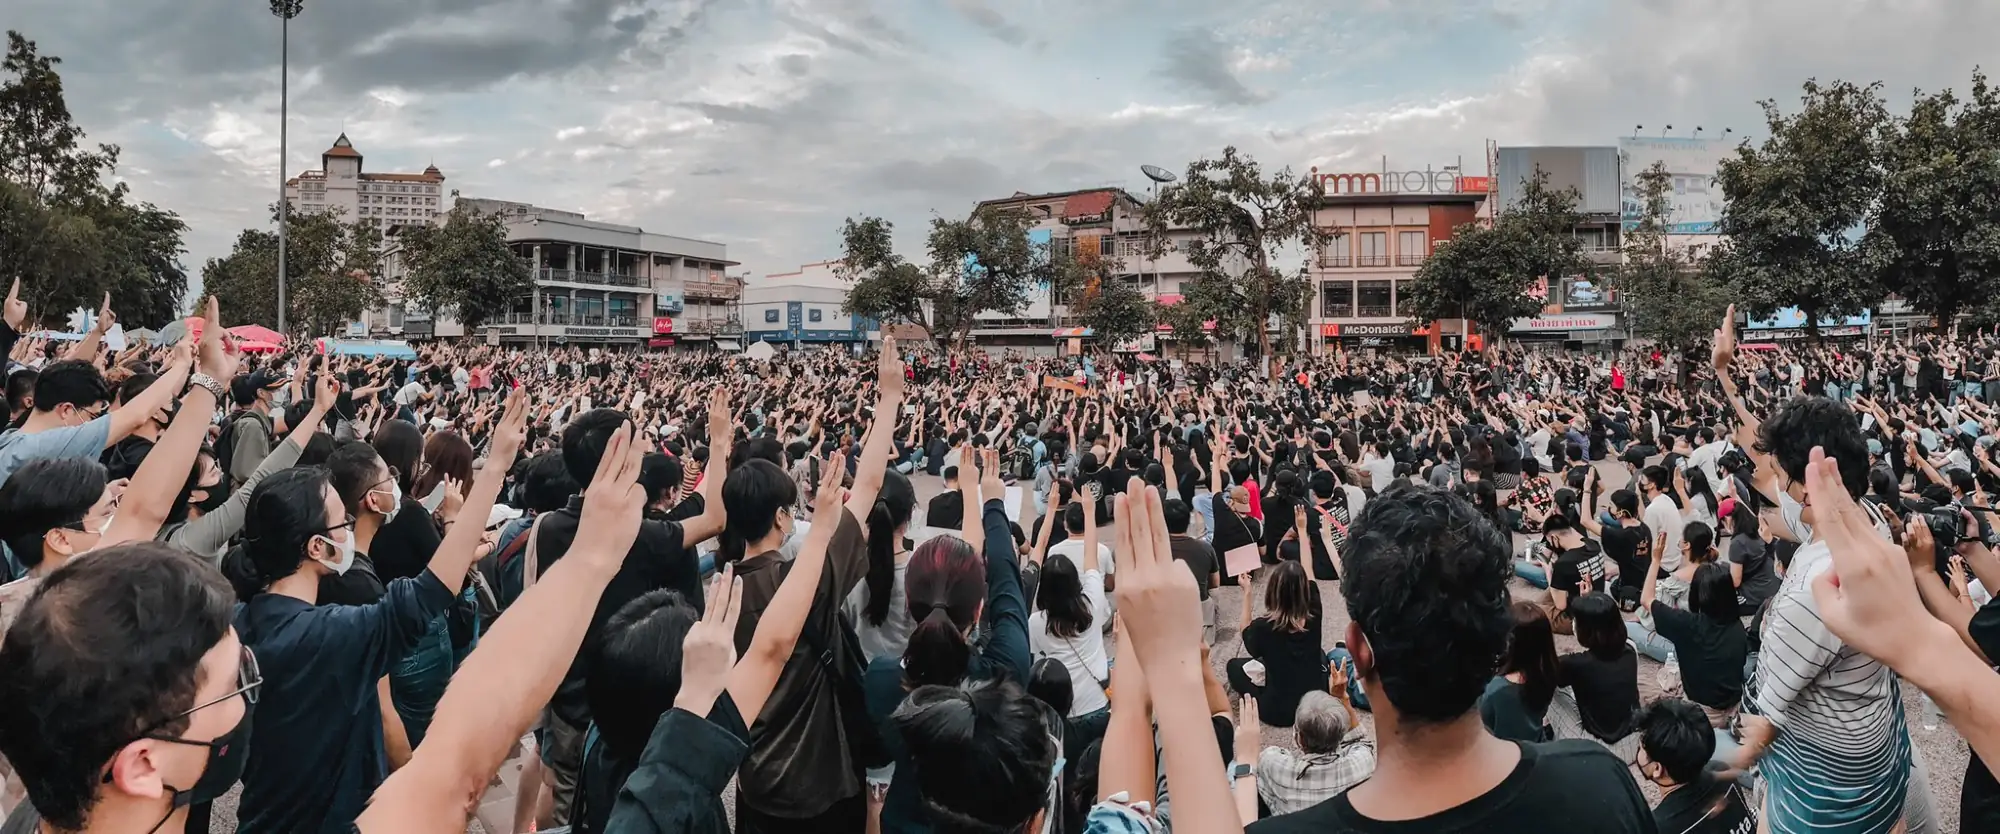 泰国抗议民众不时高举受电影《飢饿游戏》启發的「三指」手势，表达反抗极权政府的精神象徵（图片来源：Twitter）